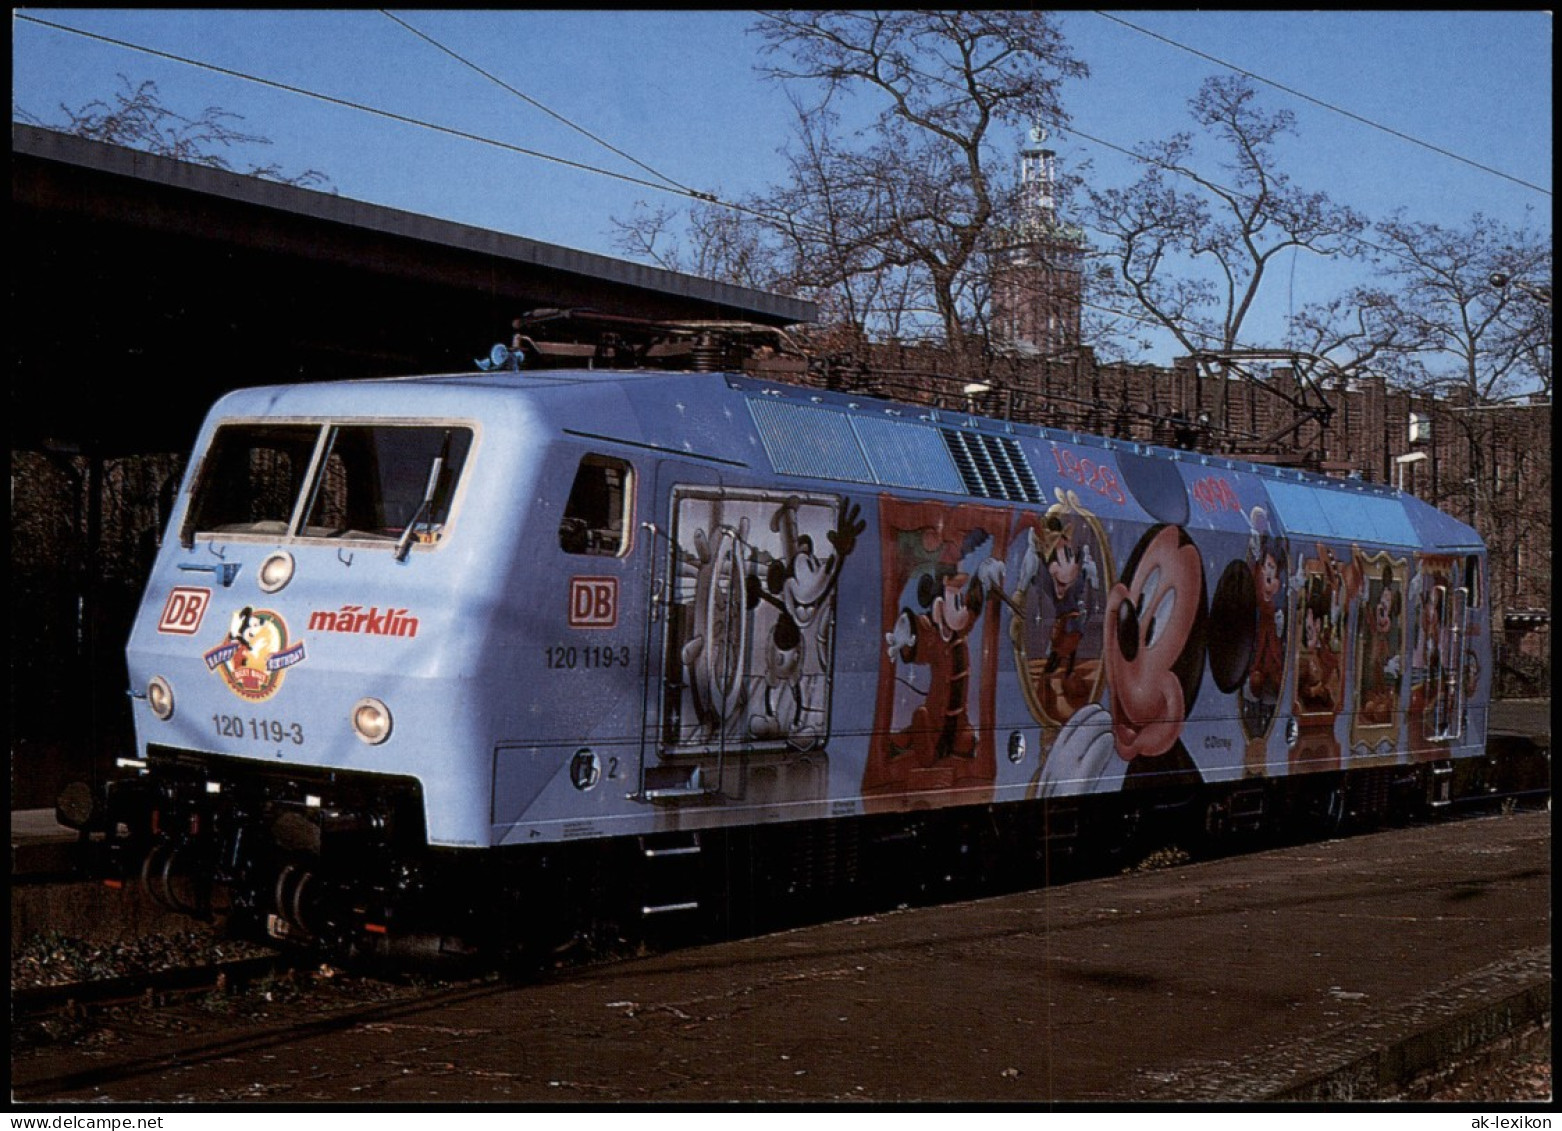 Eisenbahn Lok Zug Elektr. Universallokomotive Mit Mickey Maus Motiv 1998 - Treinen